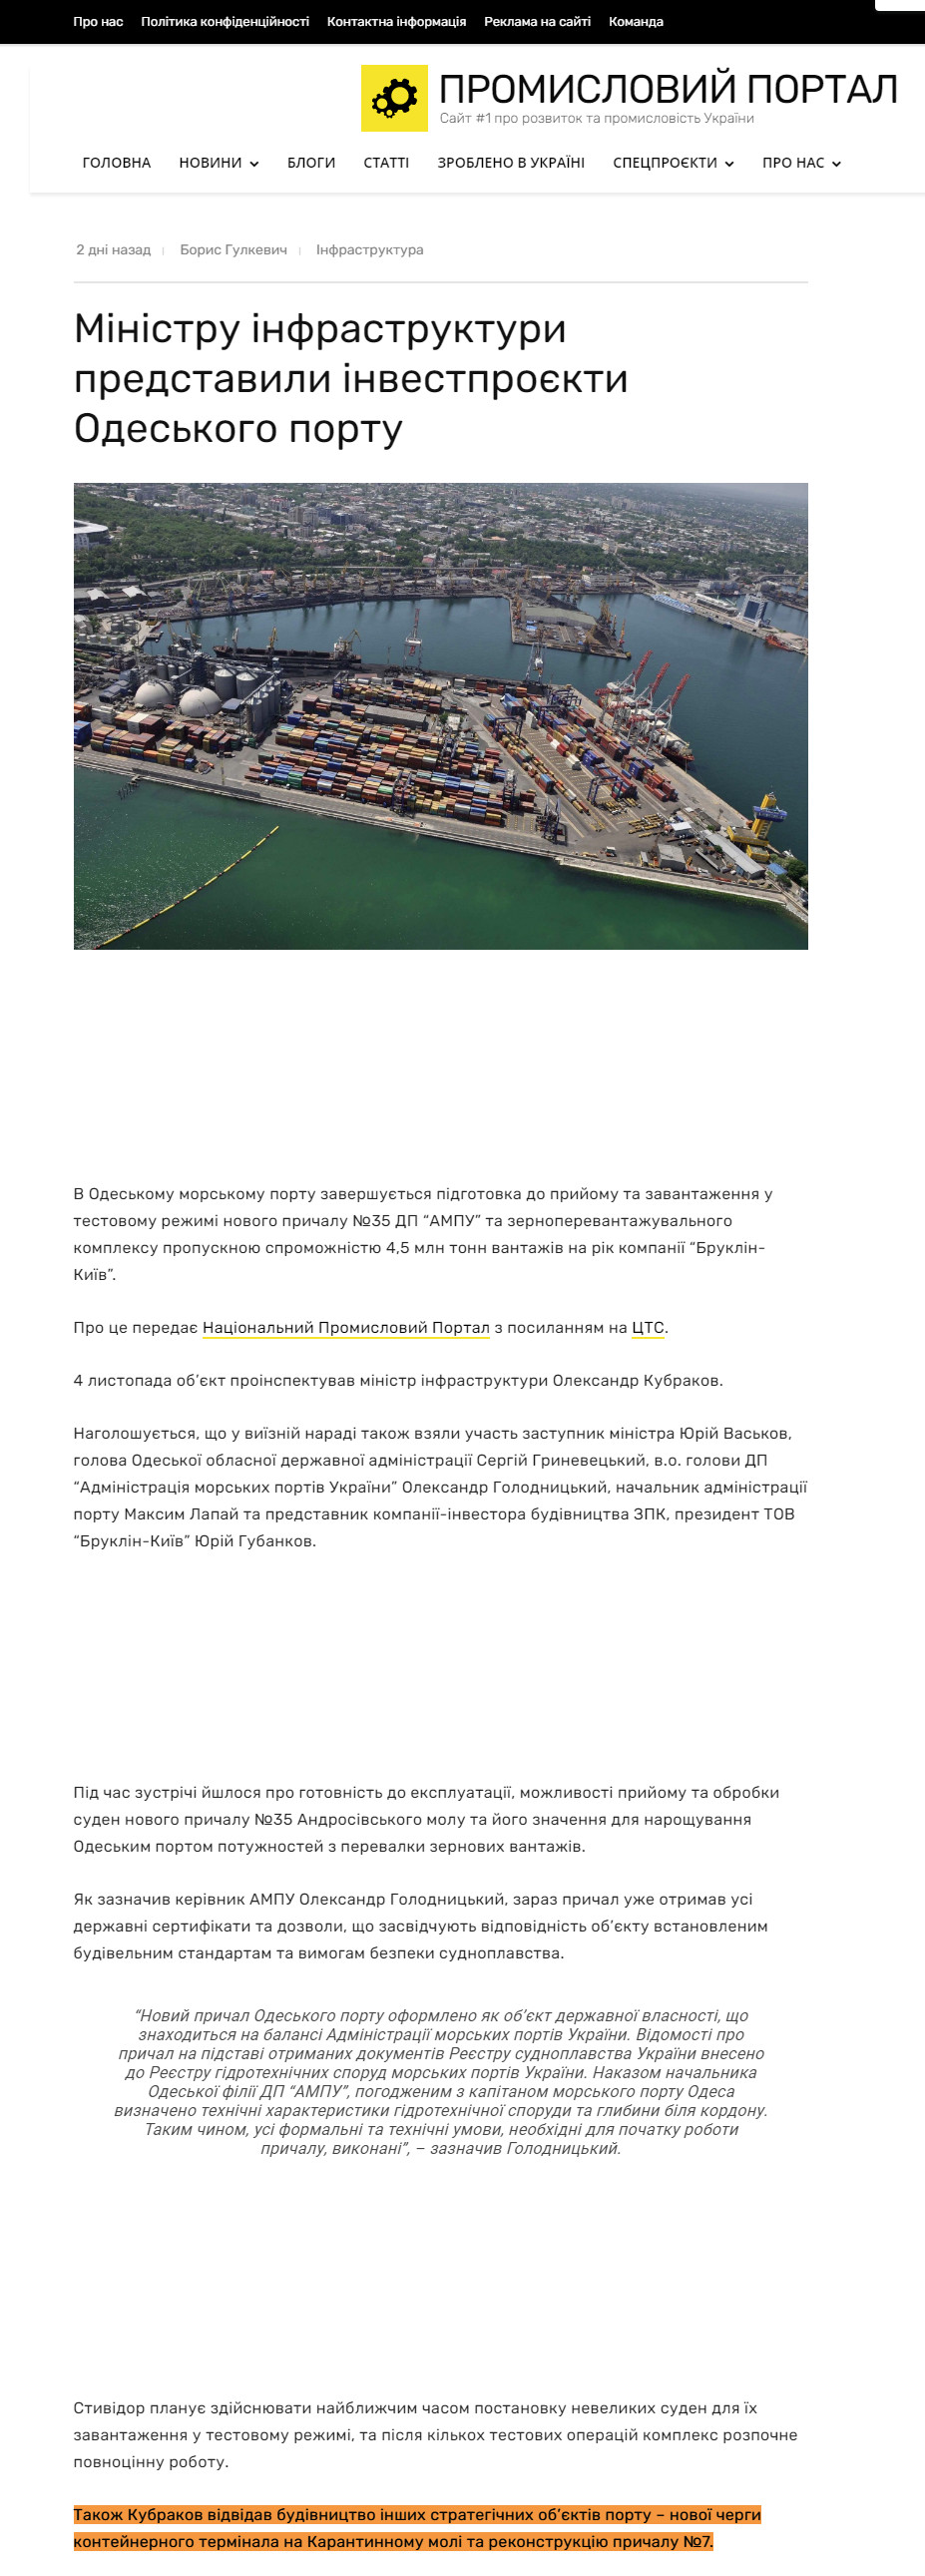 https://uprom.info/news/other/infrastruktura/ministru-infrastruktury-predstavyly-investproyekty-odeskogo-portu/